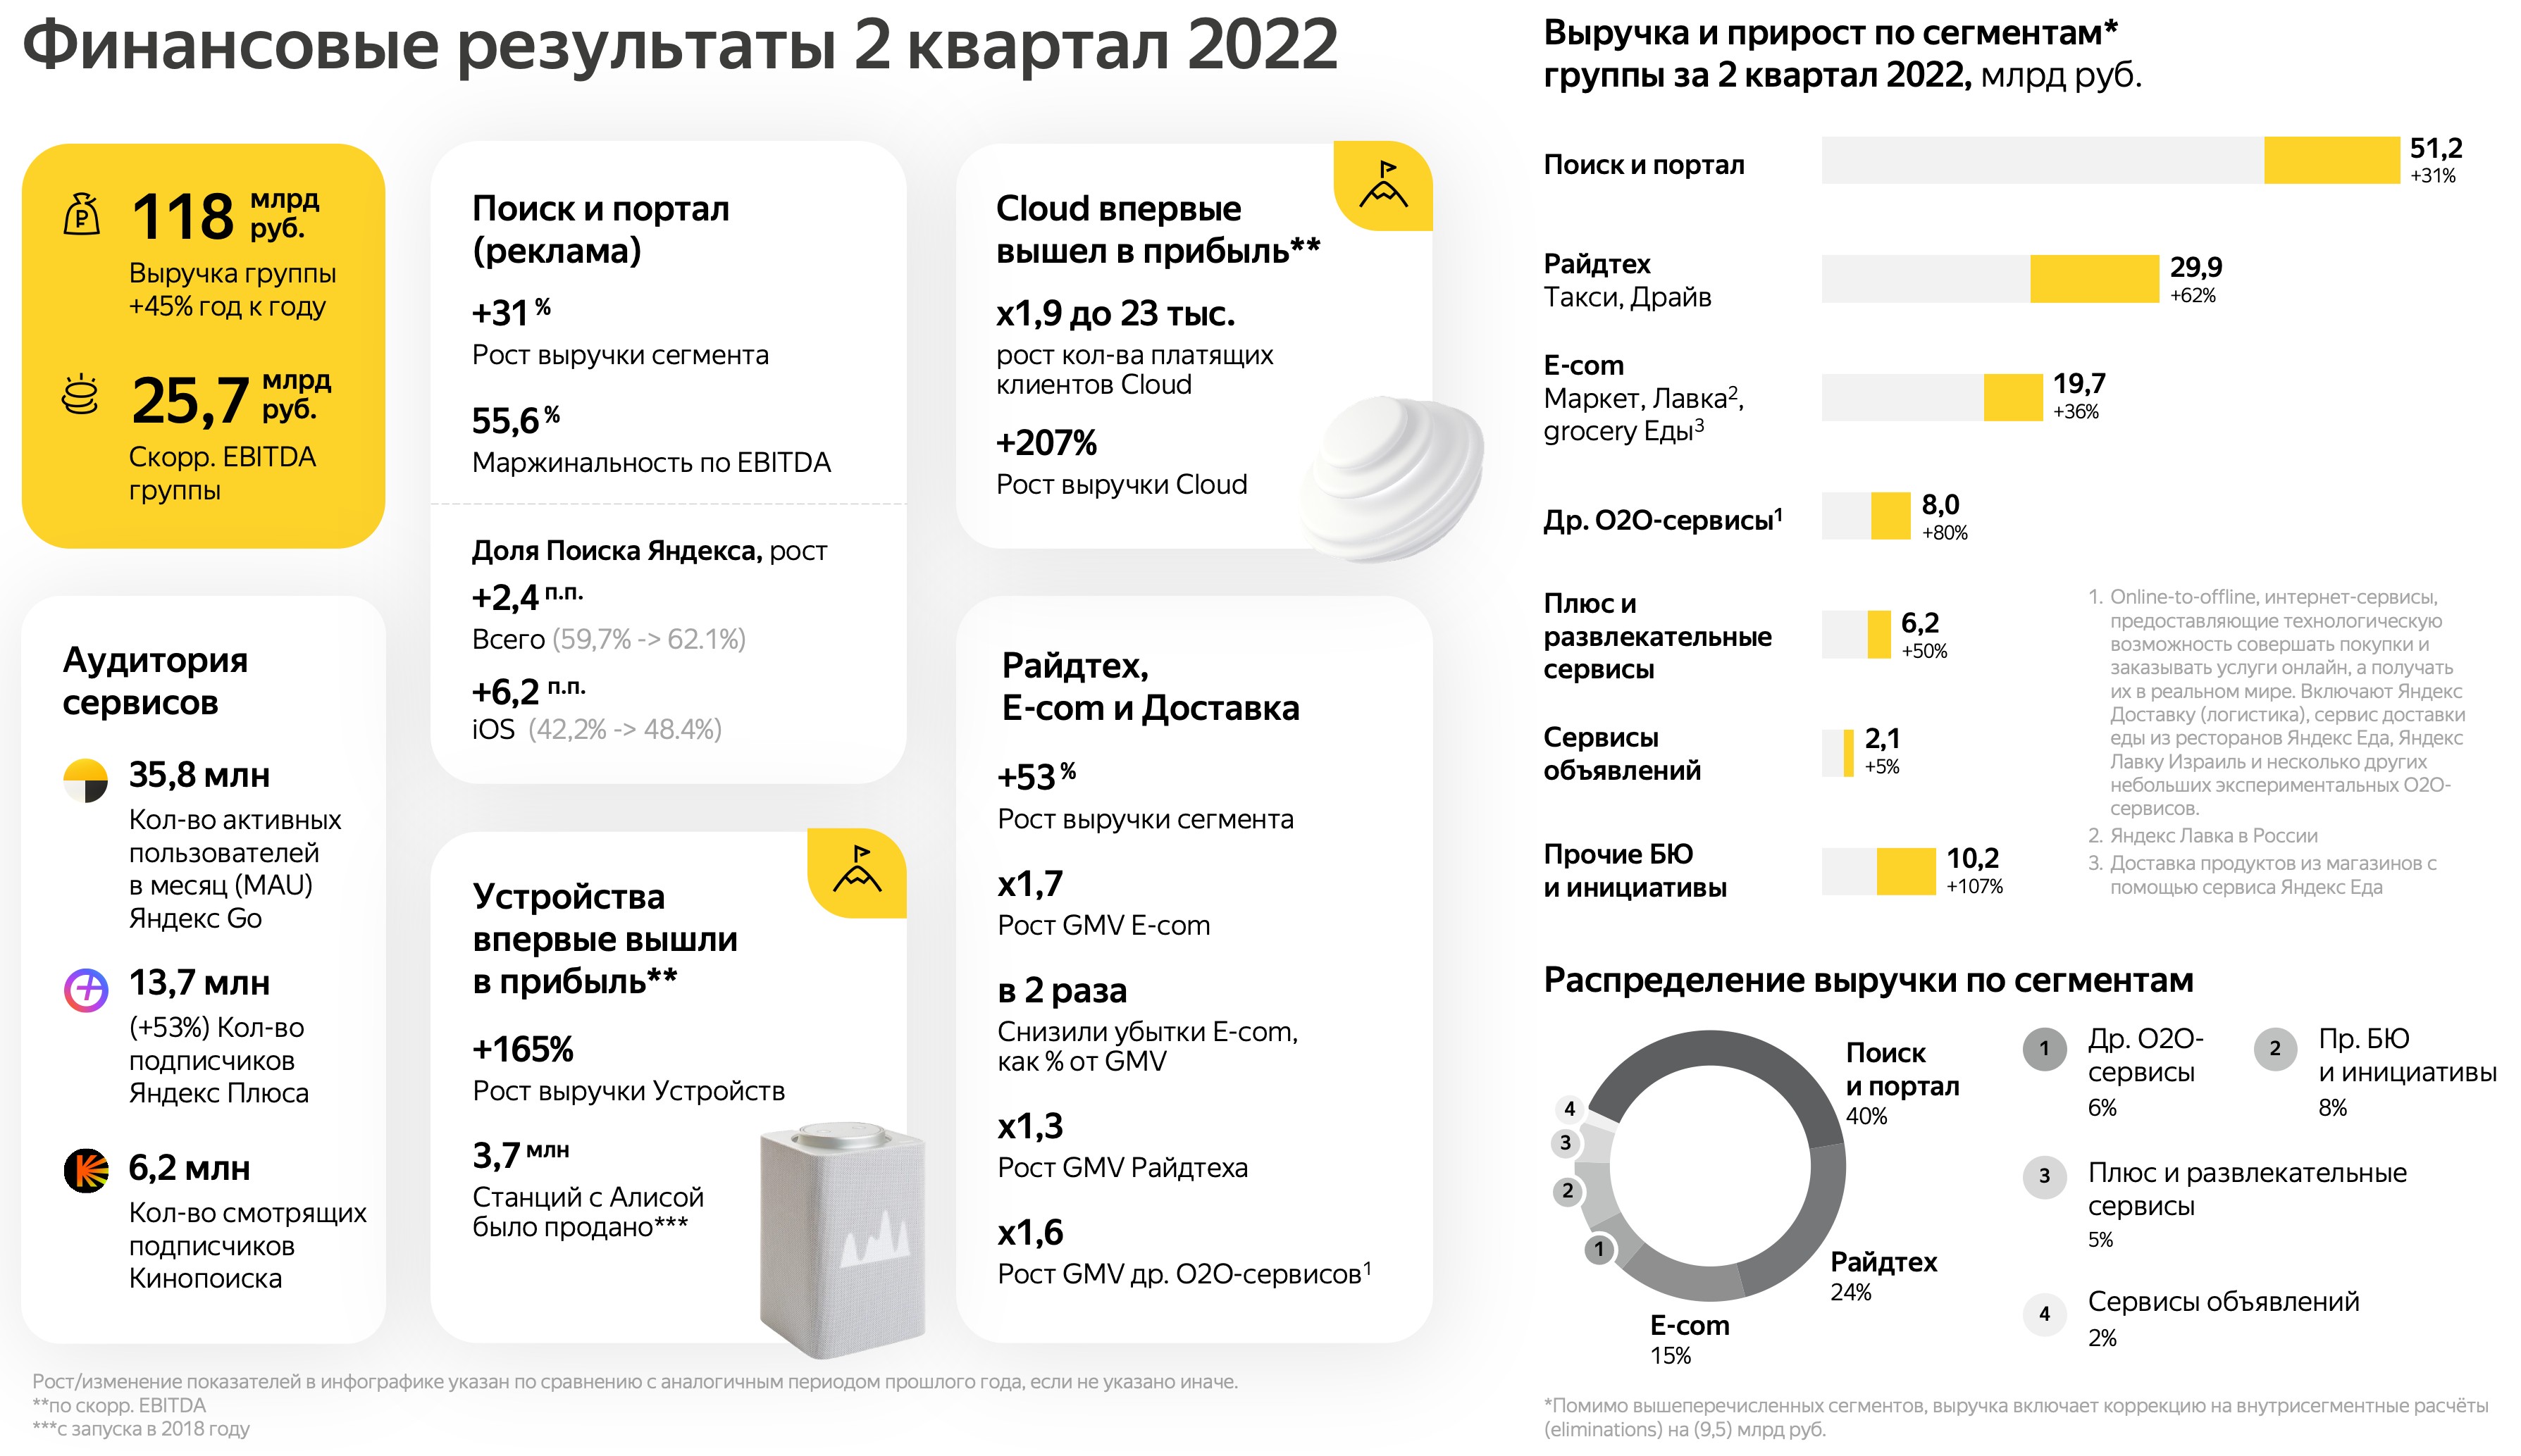 Выручка в миллионах рублей. Прибыль Яндекса 2022. 2 Квартал 2022 года.